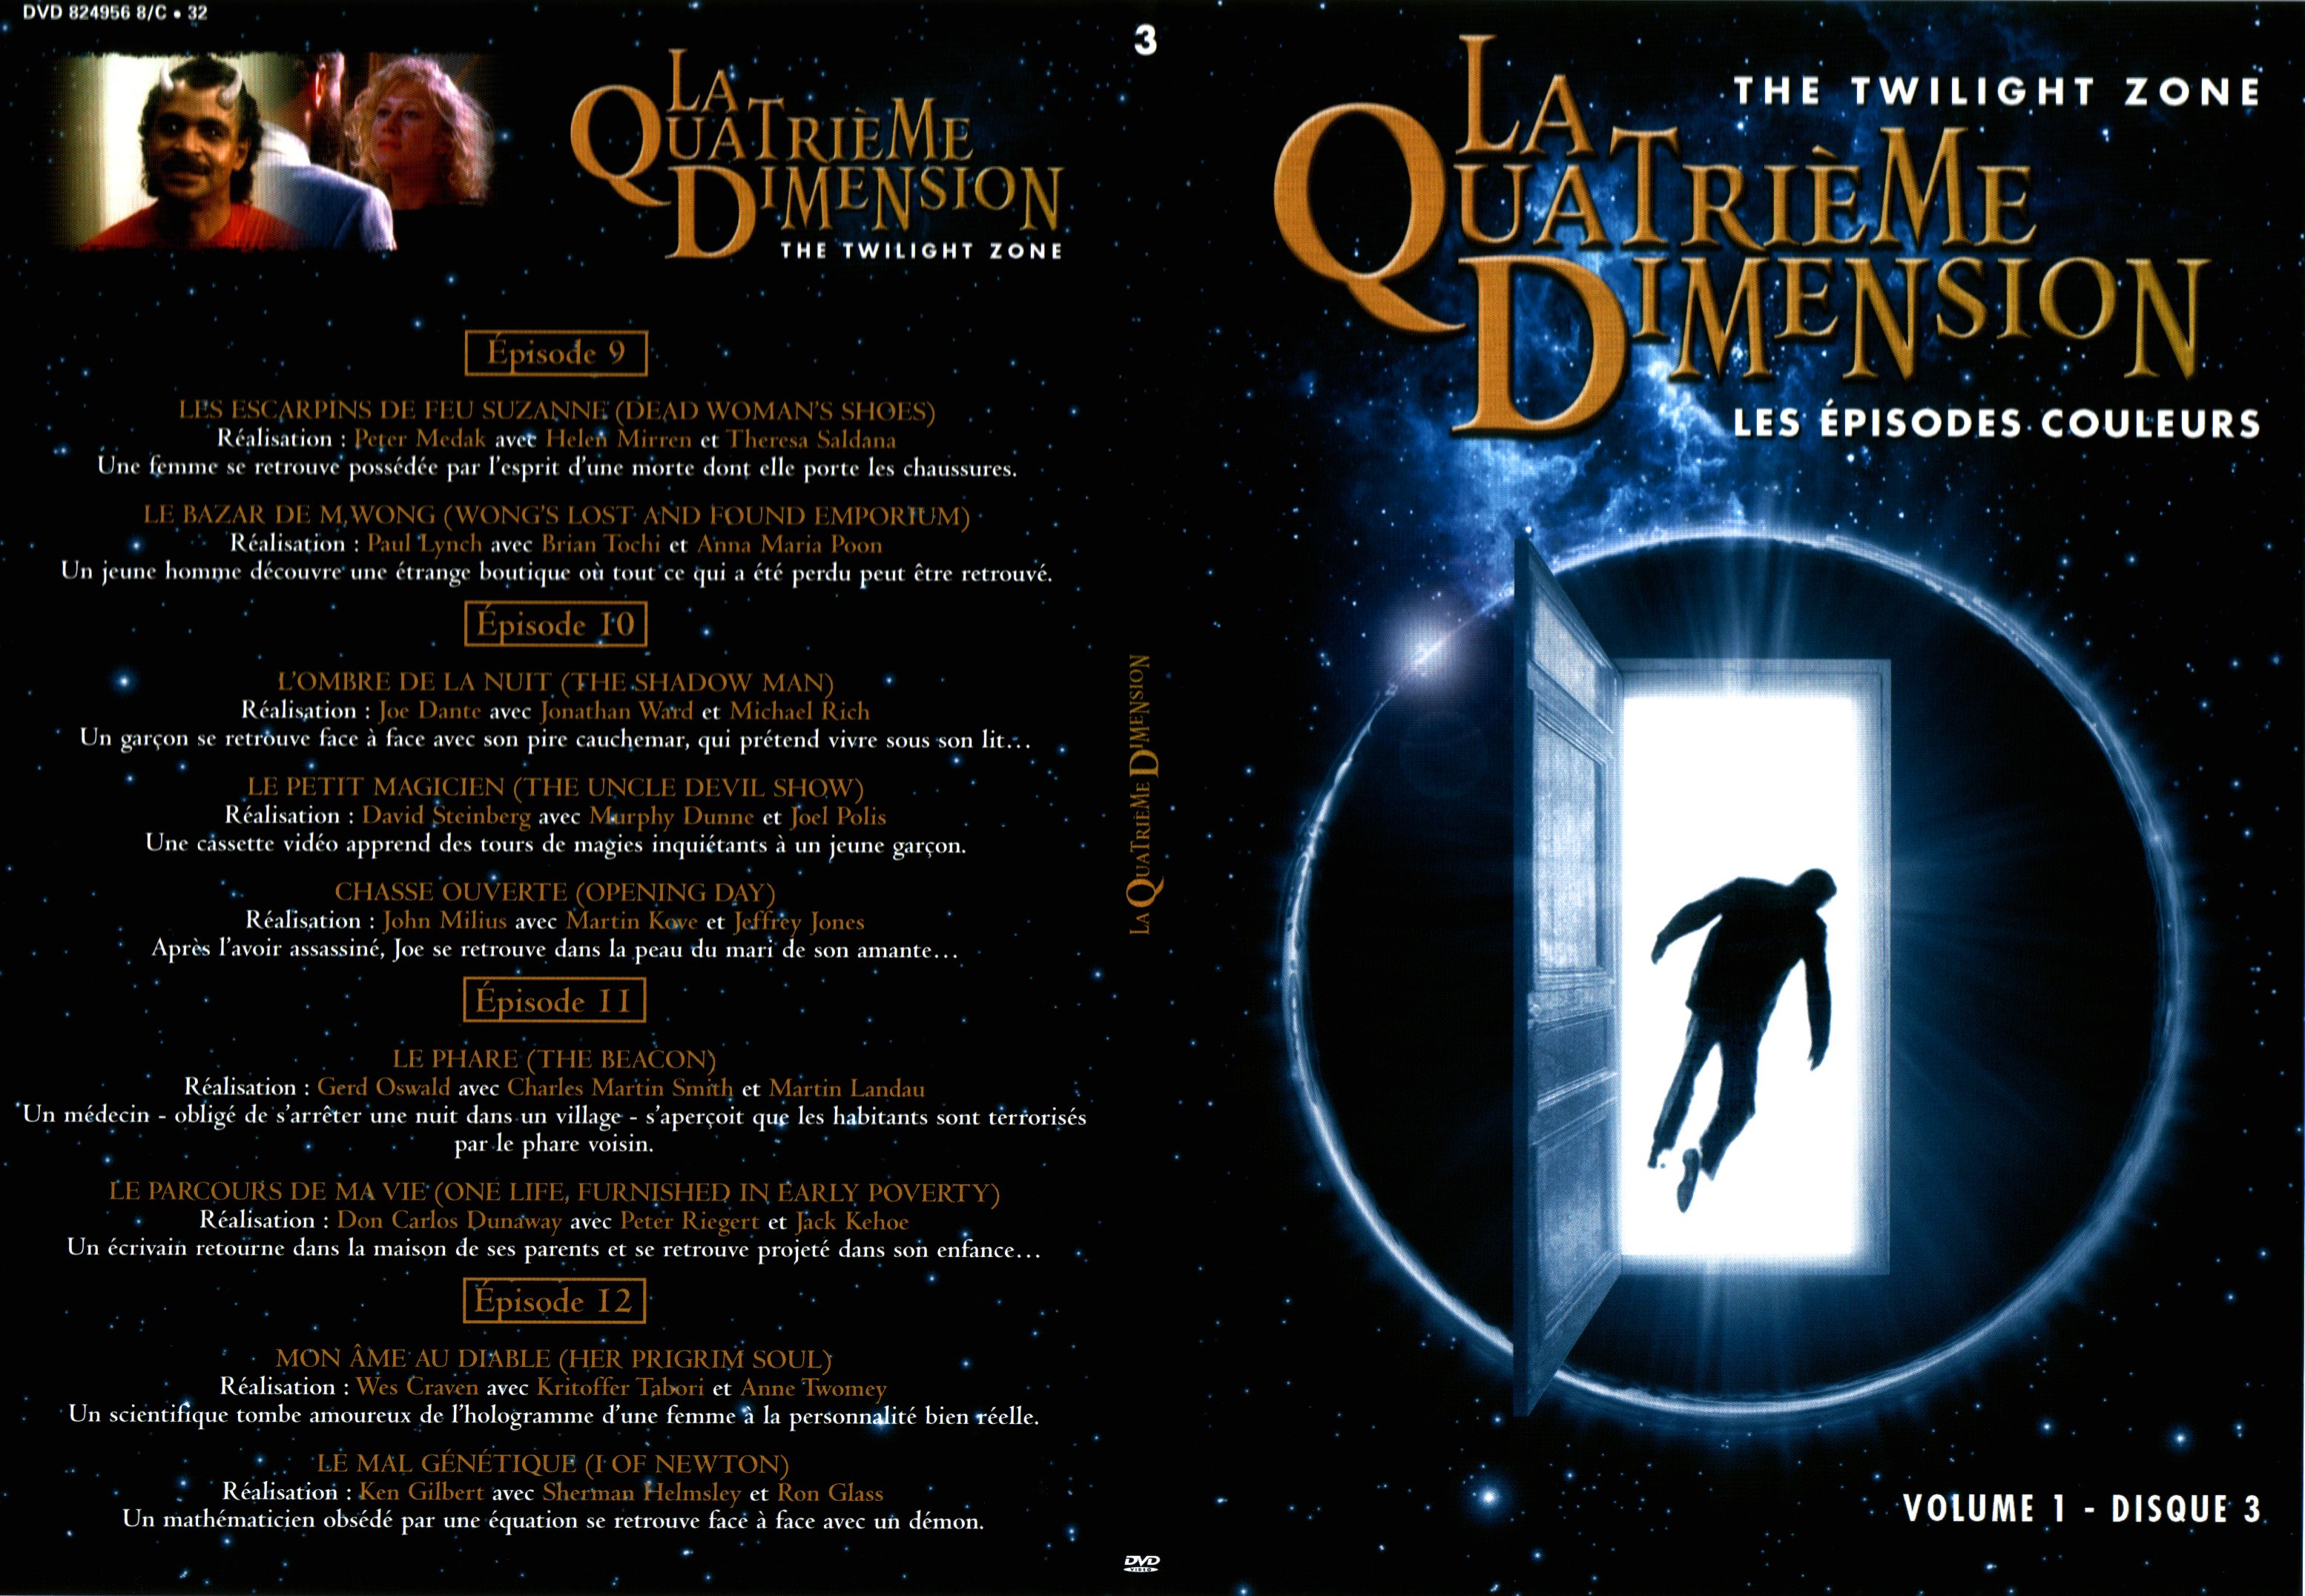 Jaquette DVD La quatrime dimension - Episodes couleurs vol 1 DVD 3